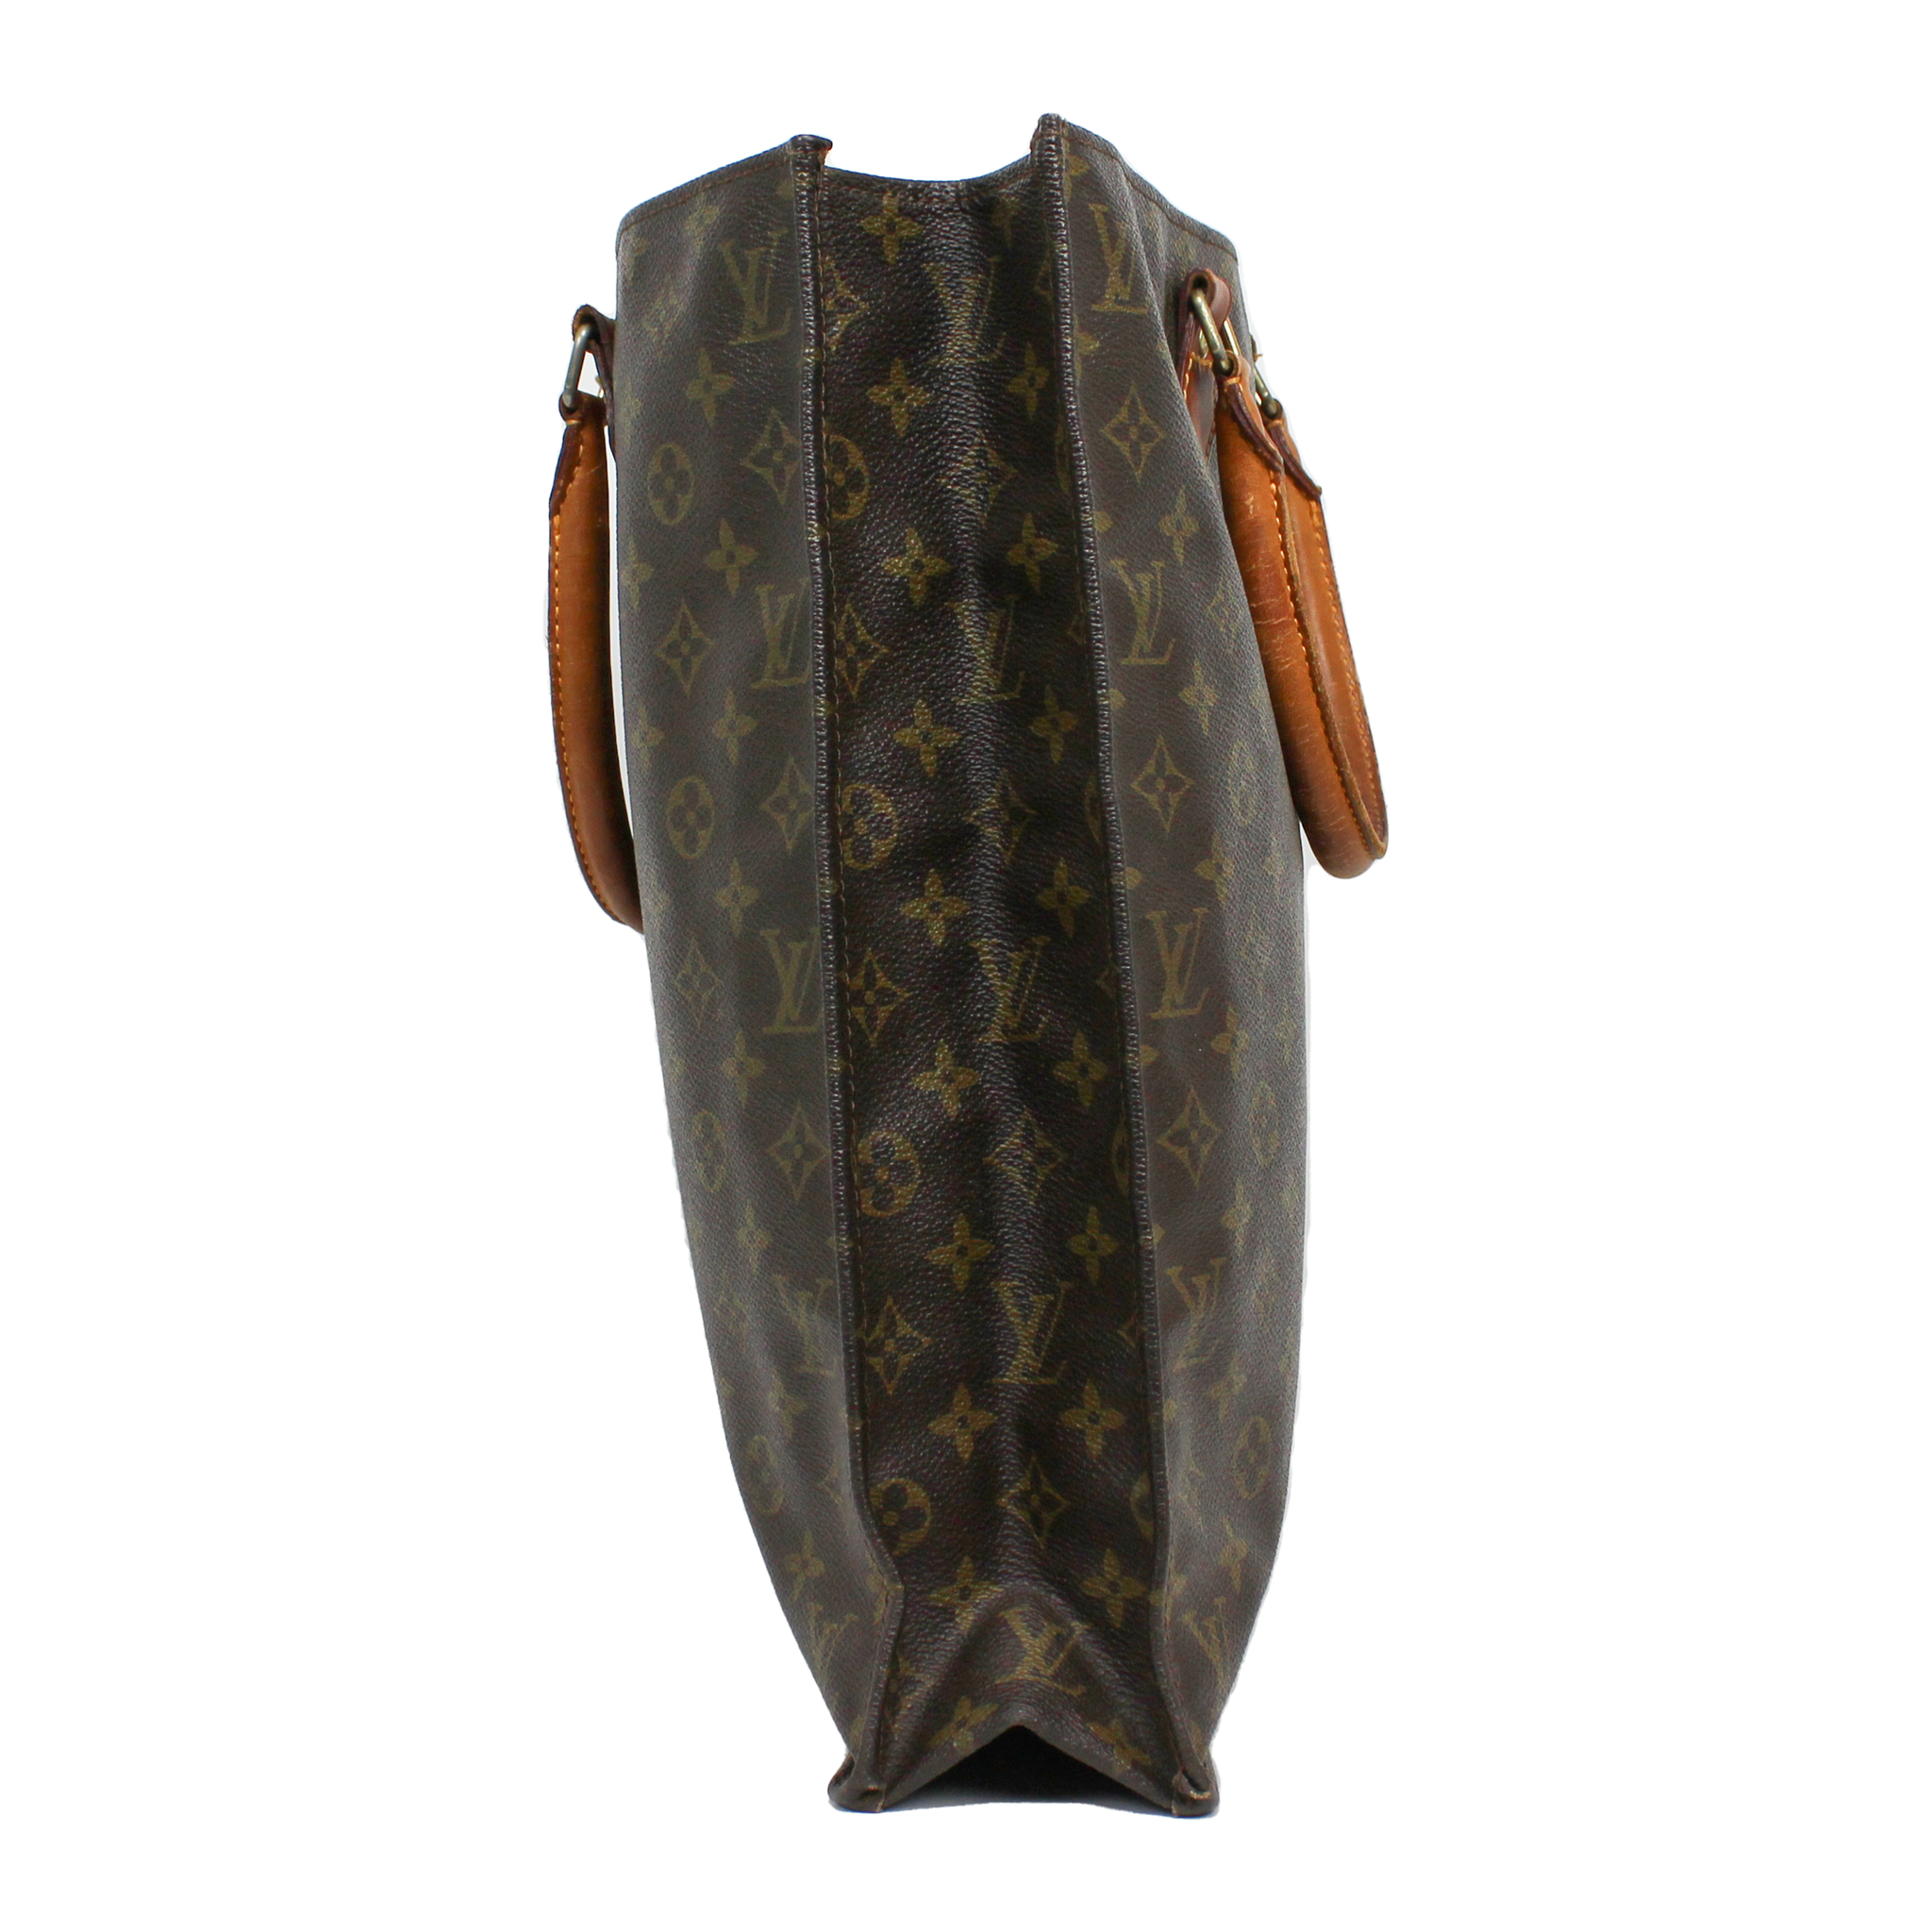 Louis Vuitton Väska "Sac Plat" (Vintage)